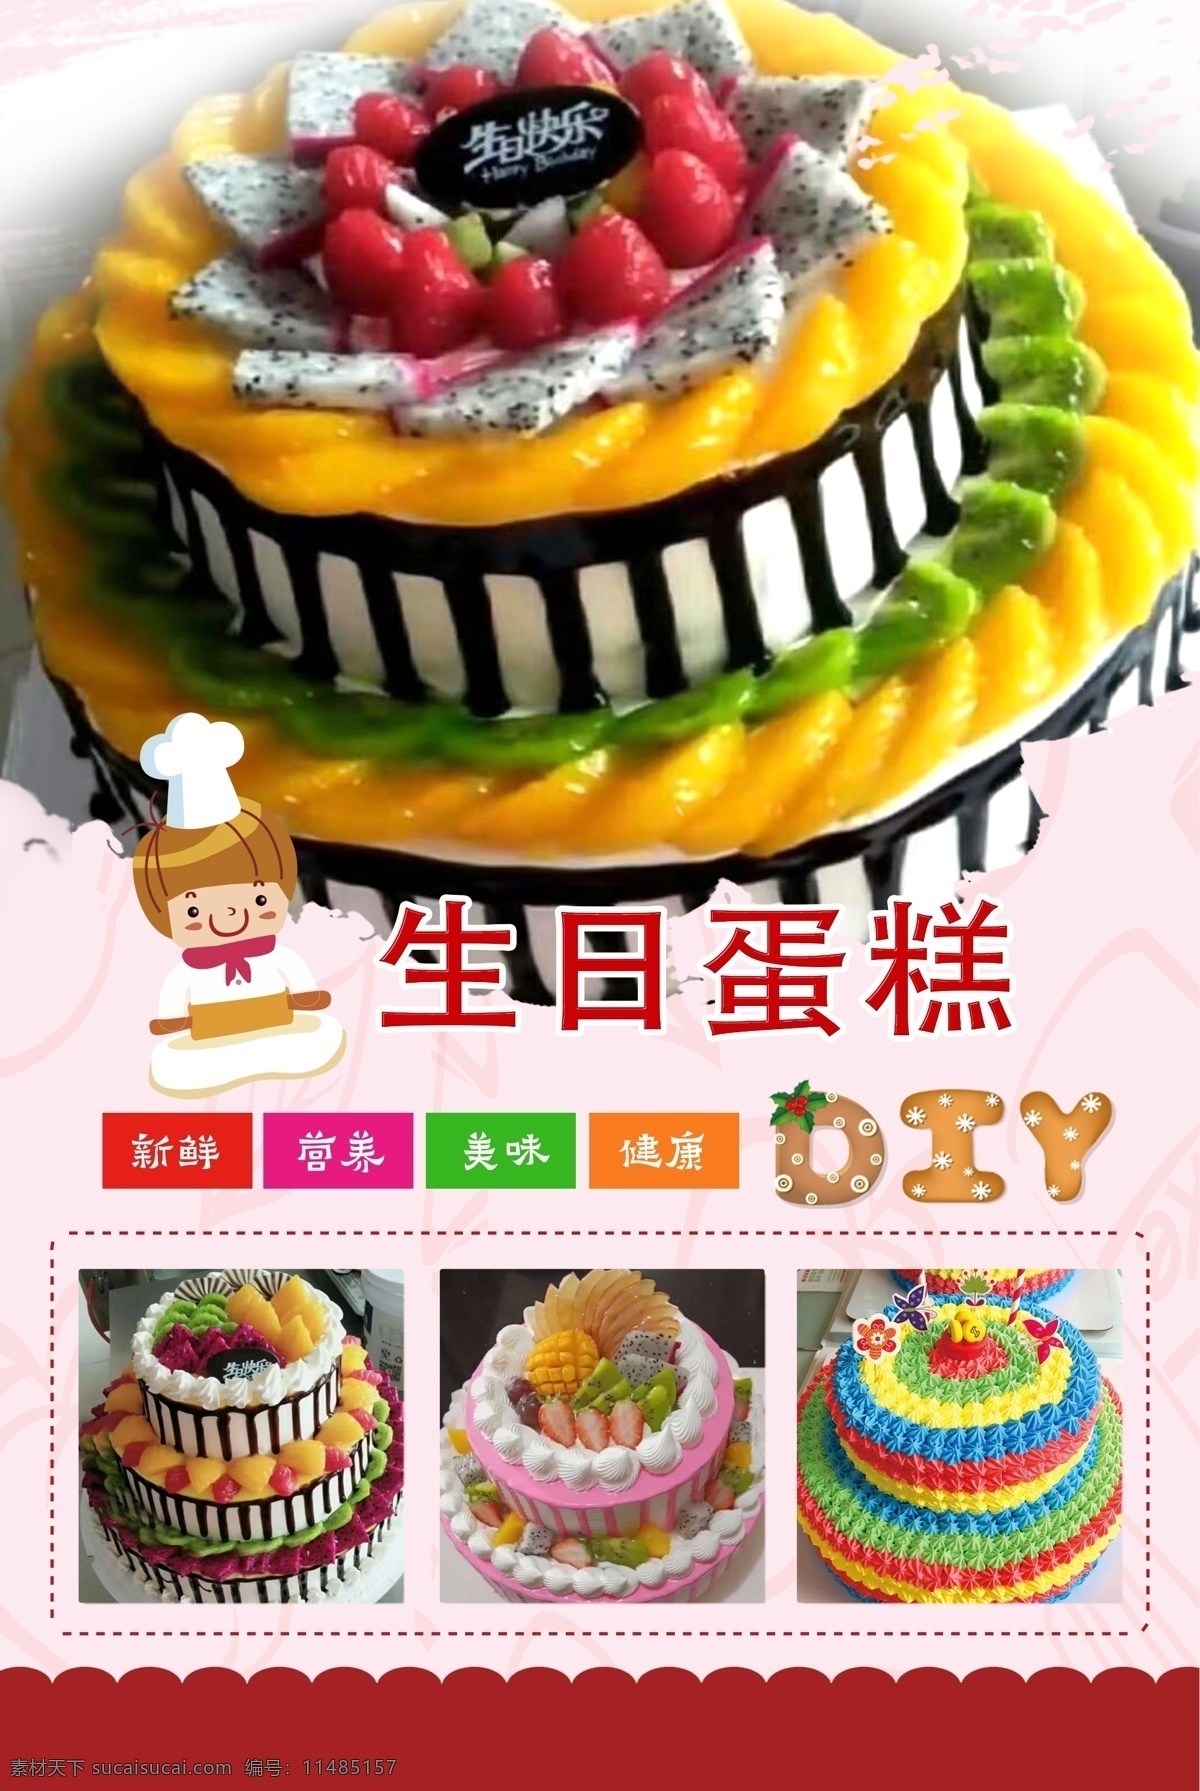 生日蛋糕图片 双层 三层 奶油 水果 彩虹蛋糕 分层